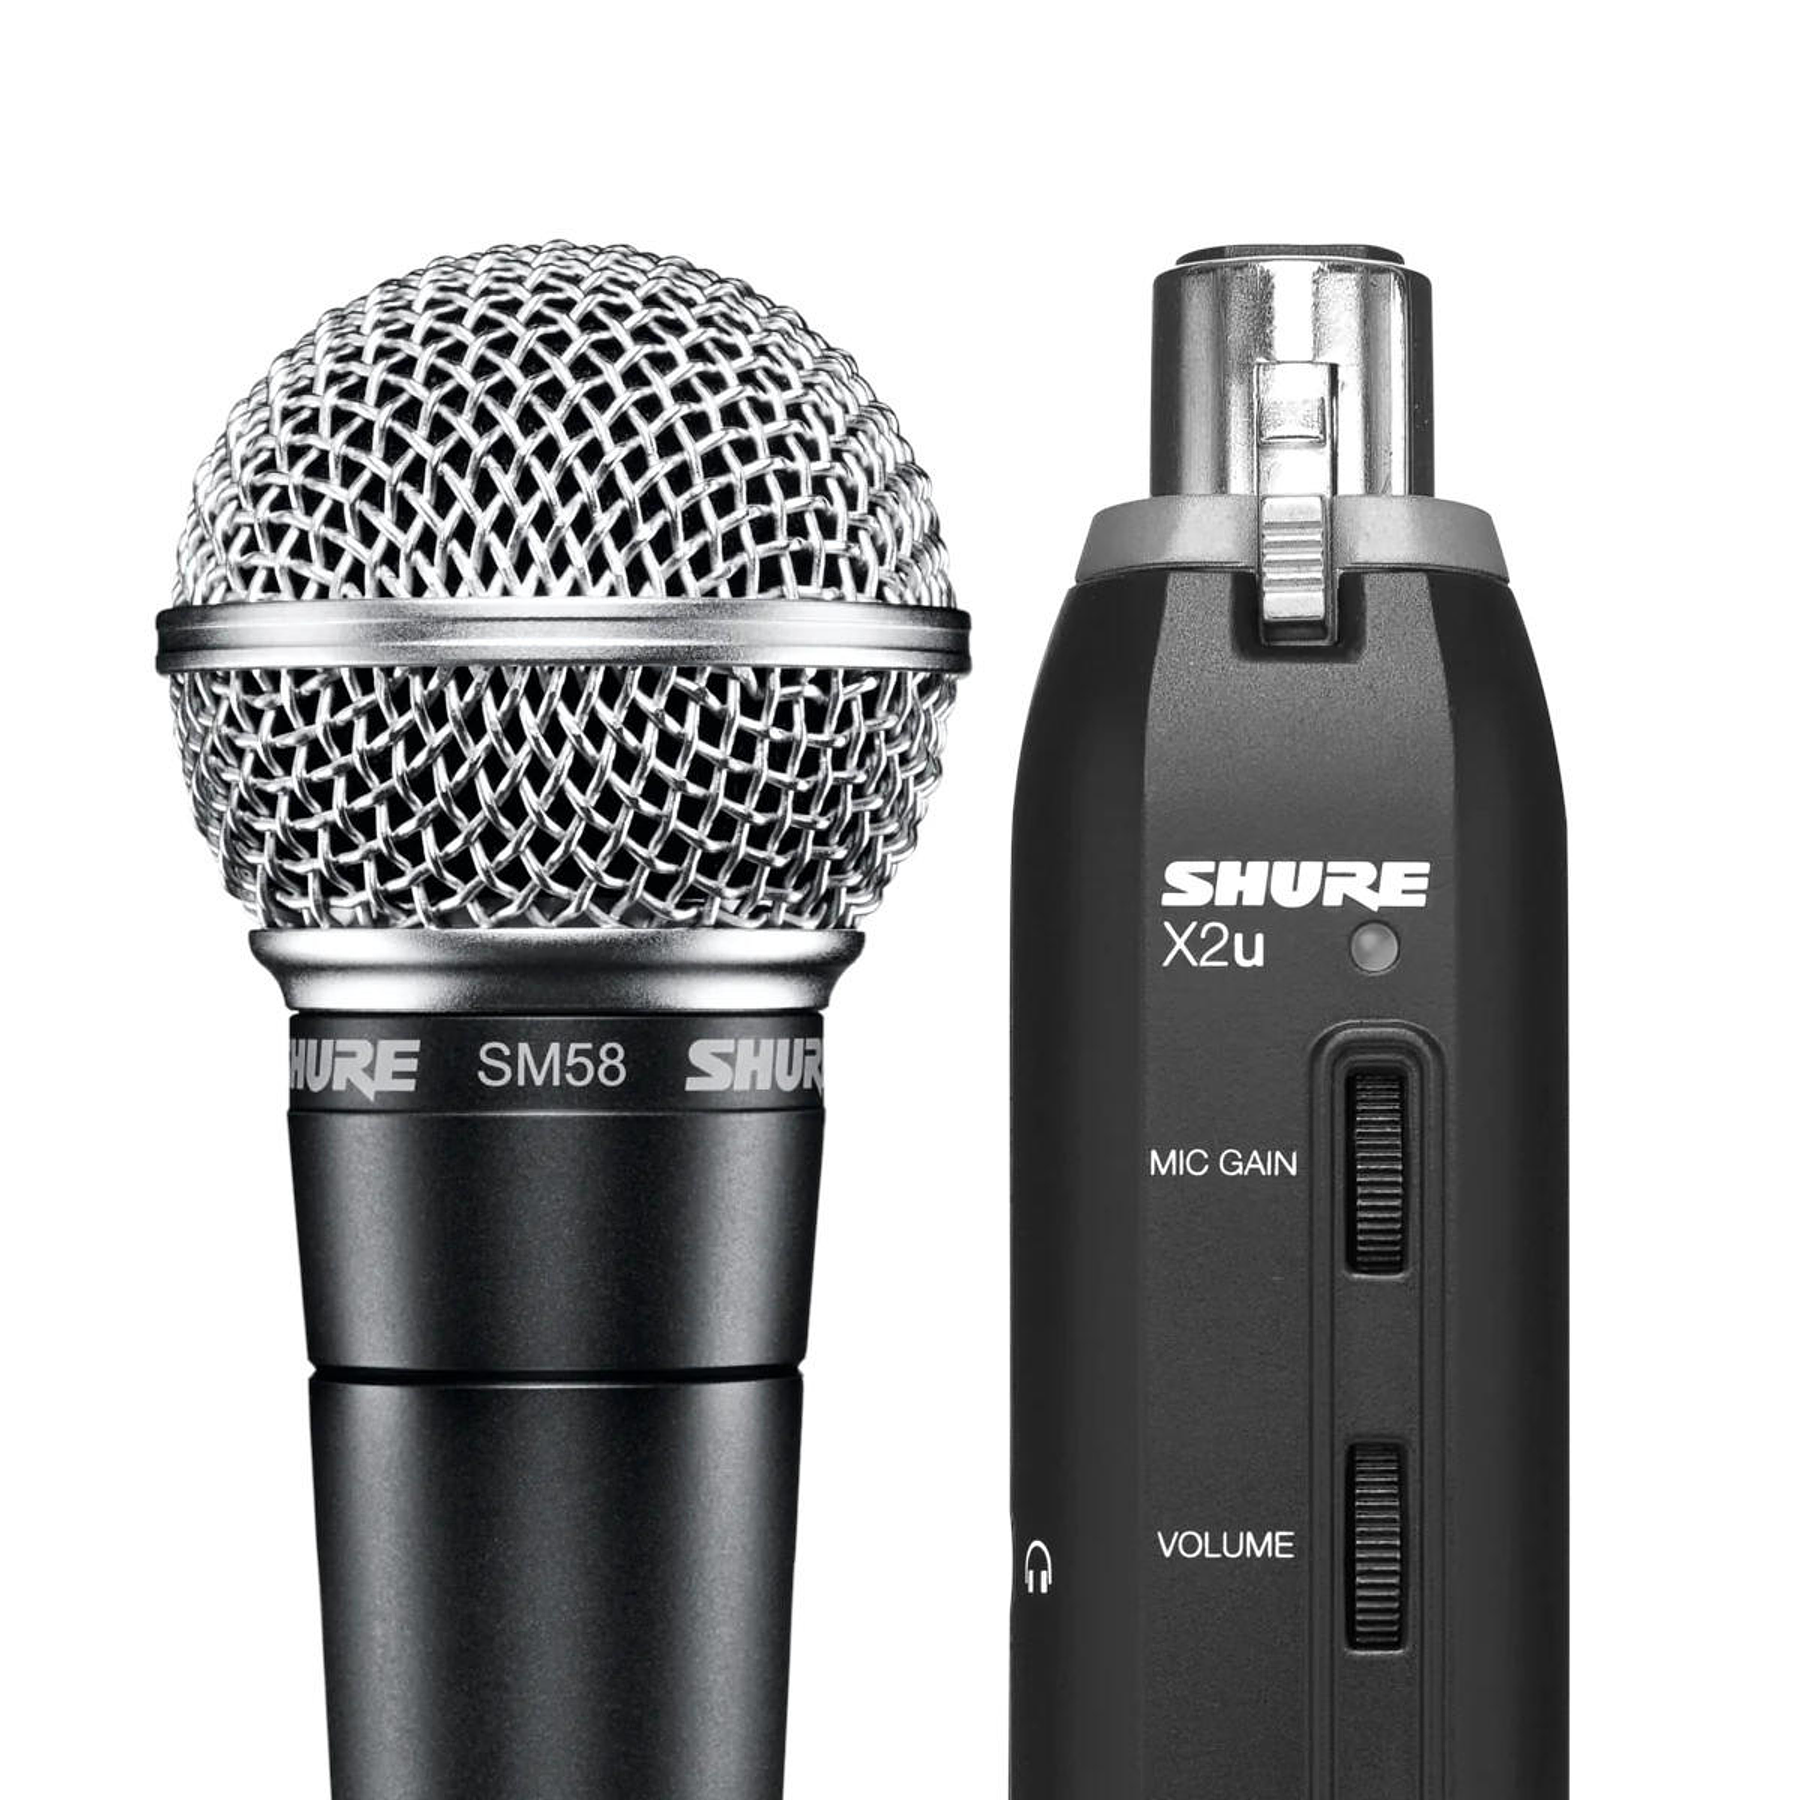 Micrófono condensador SHURE para manejar aplicaciones vocales, Plateado